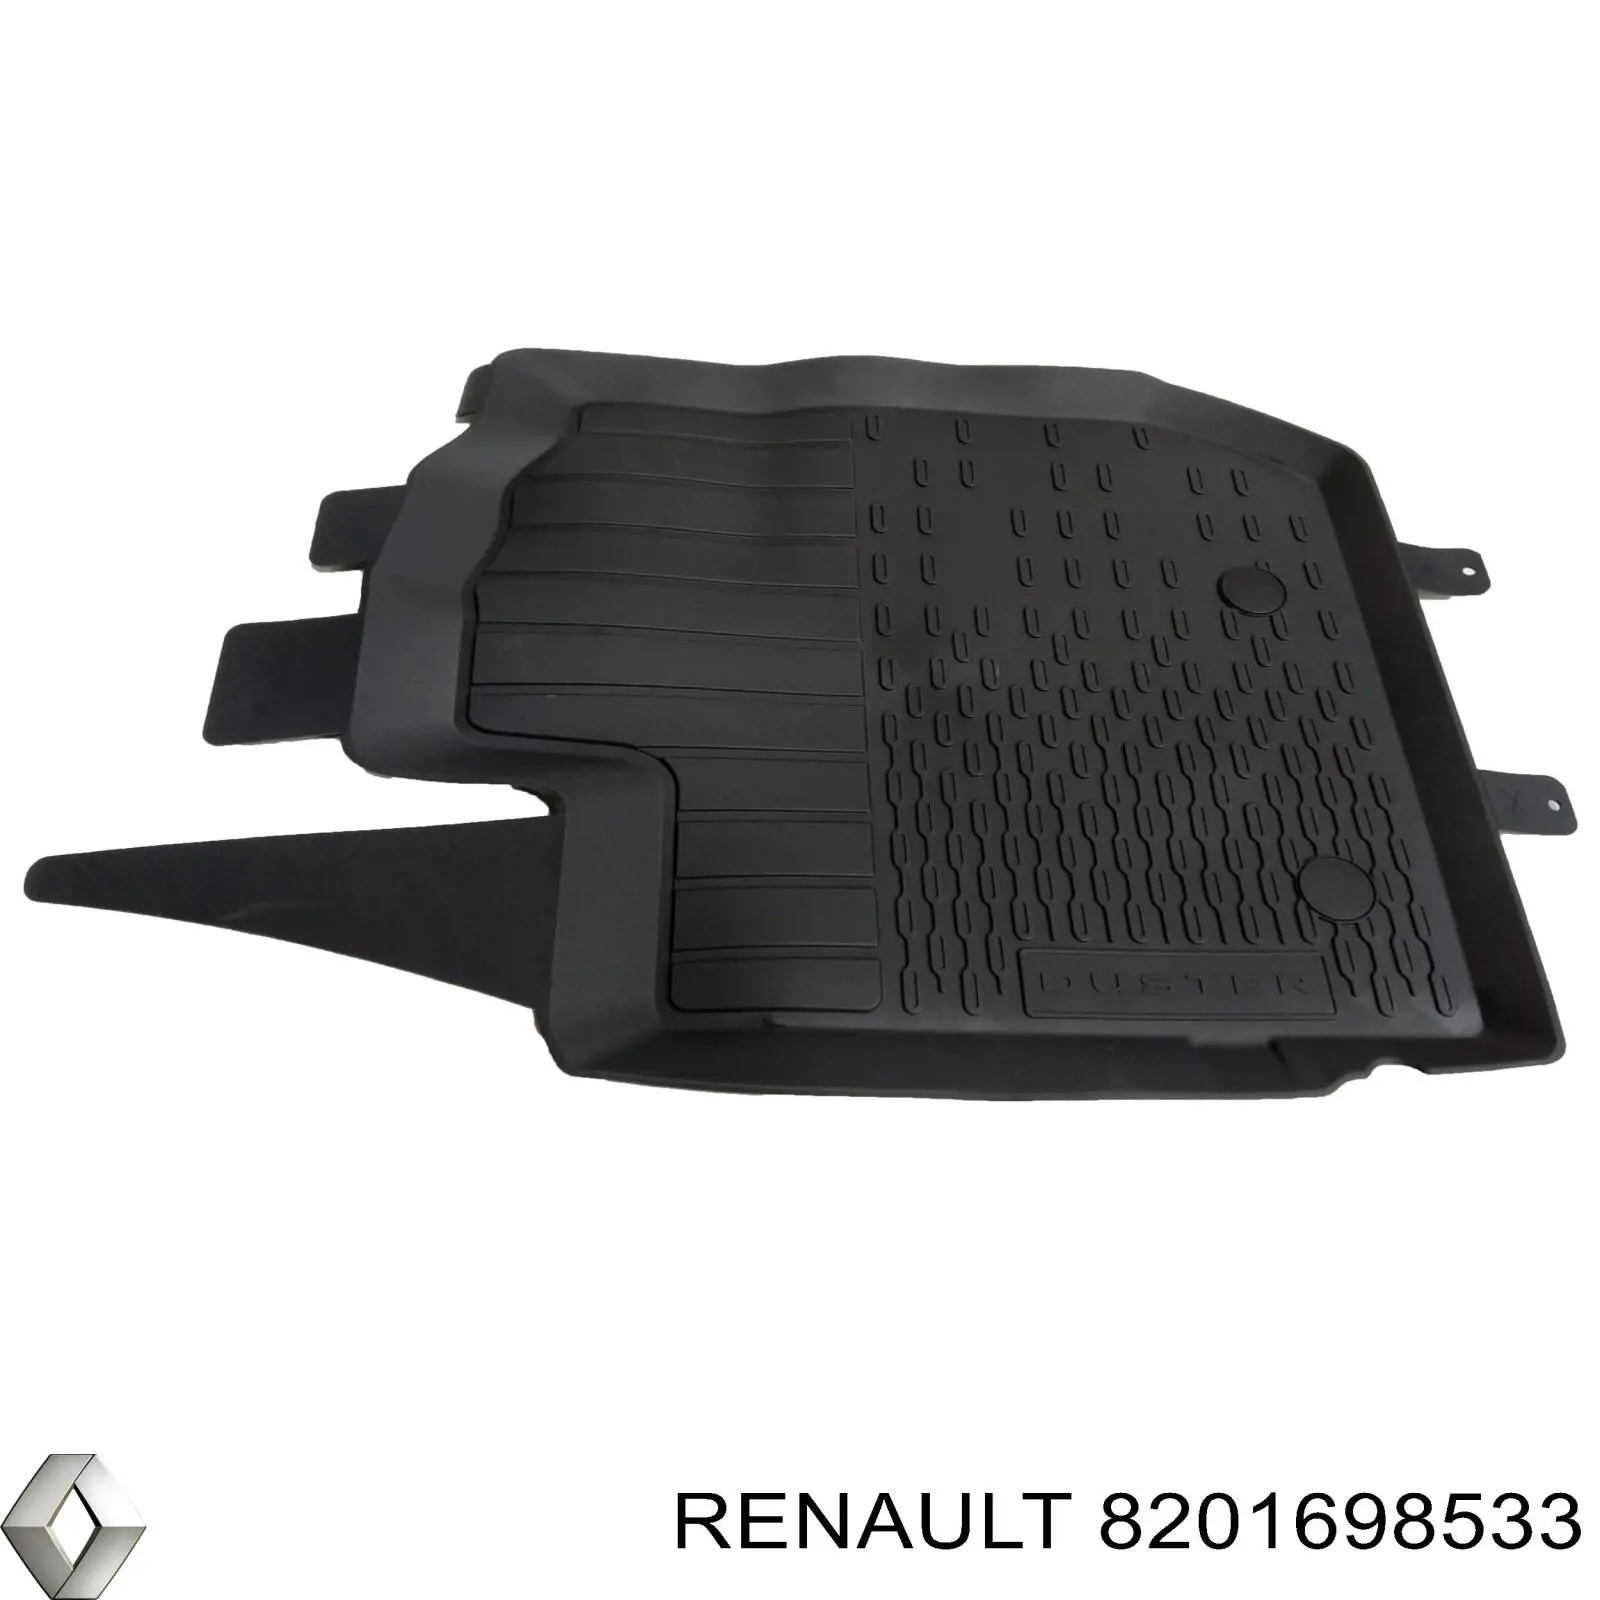 Alfombrillas Renault DUSTER HM